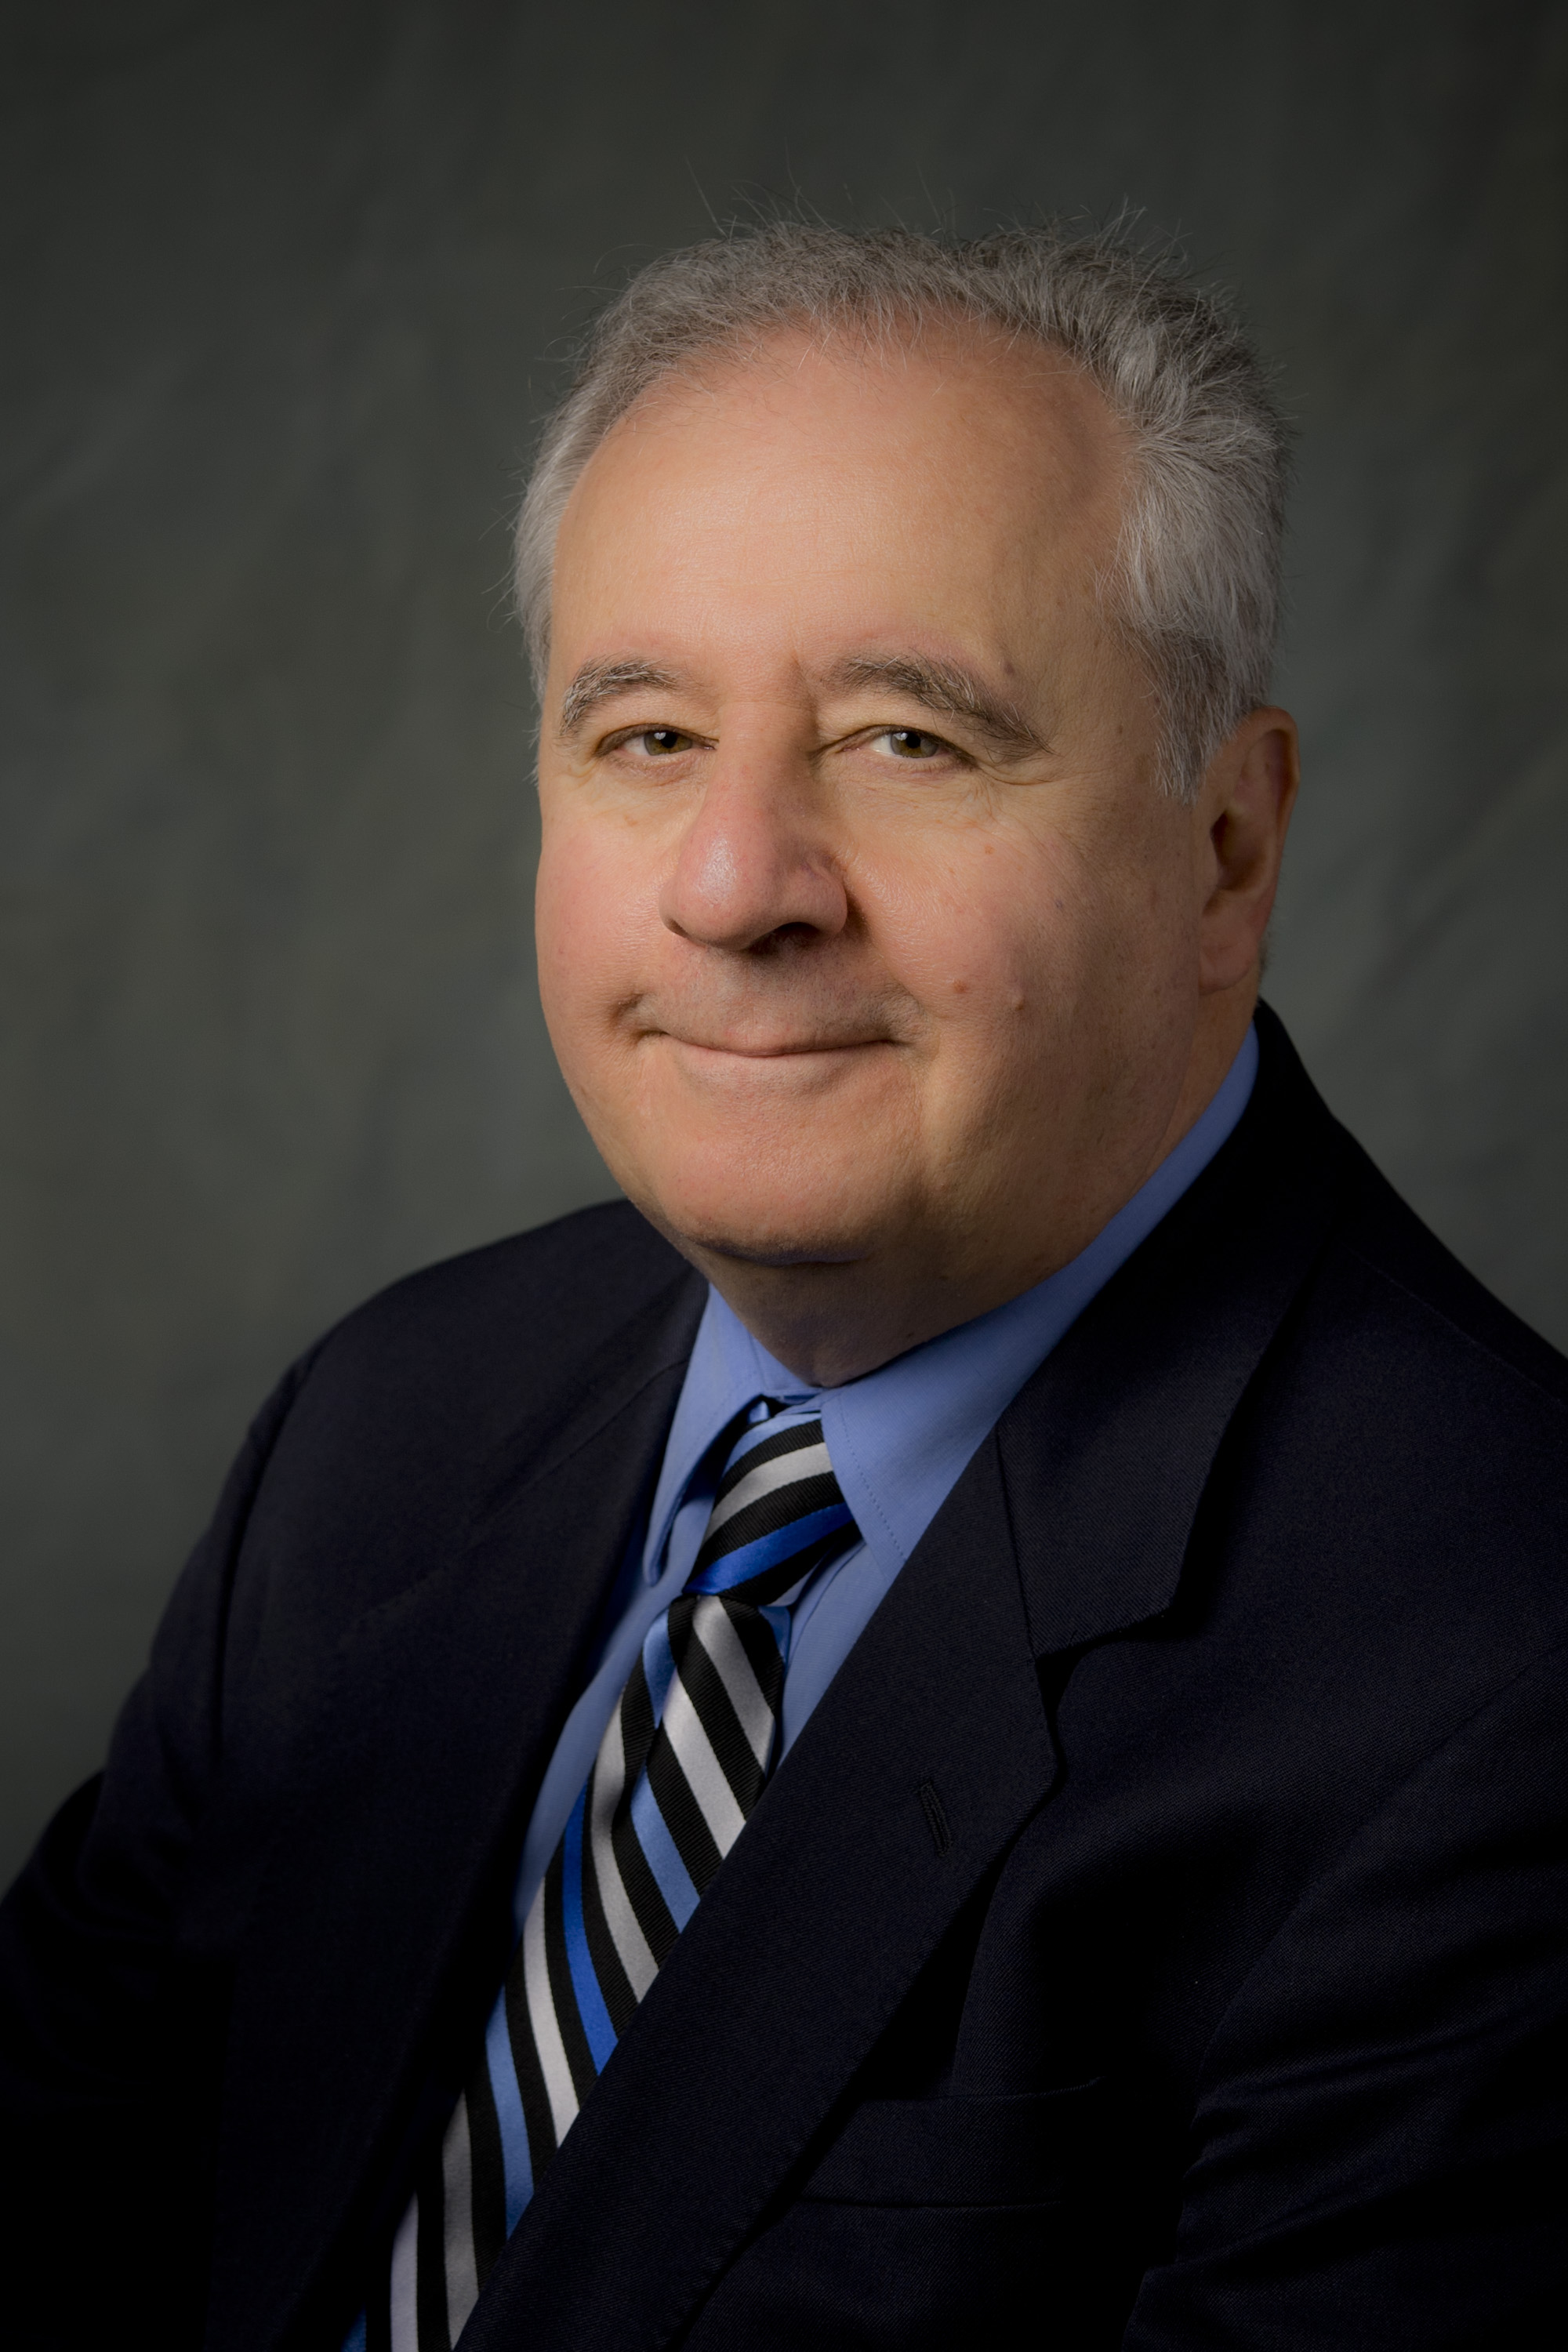 Prof. Dan M. Frangopol, Lehigh University